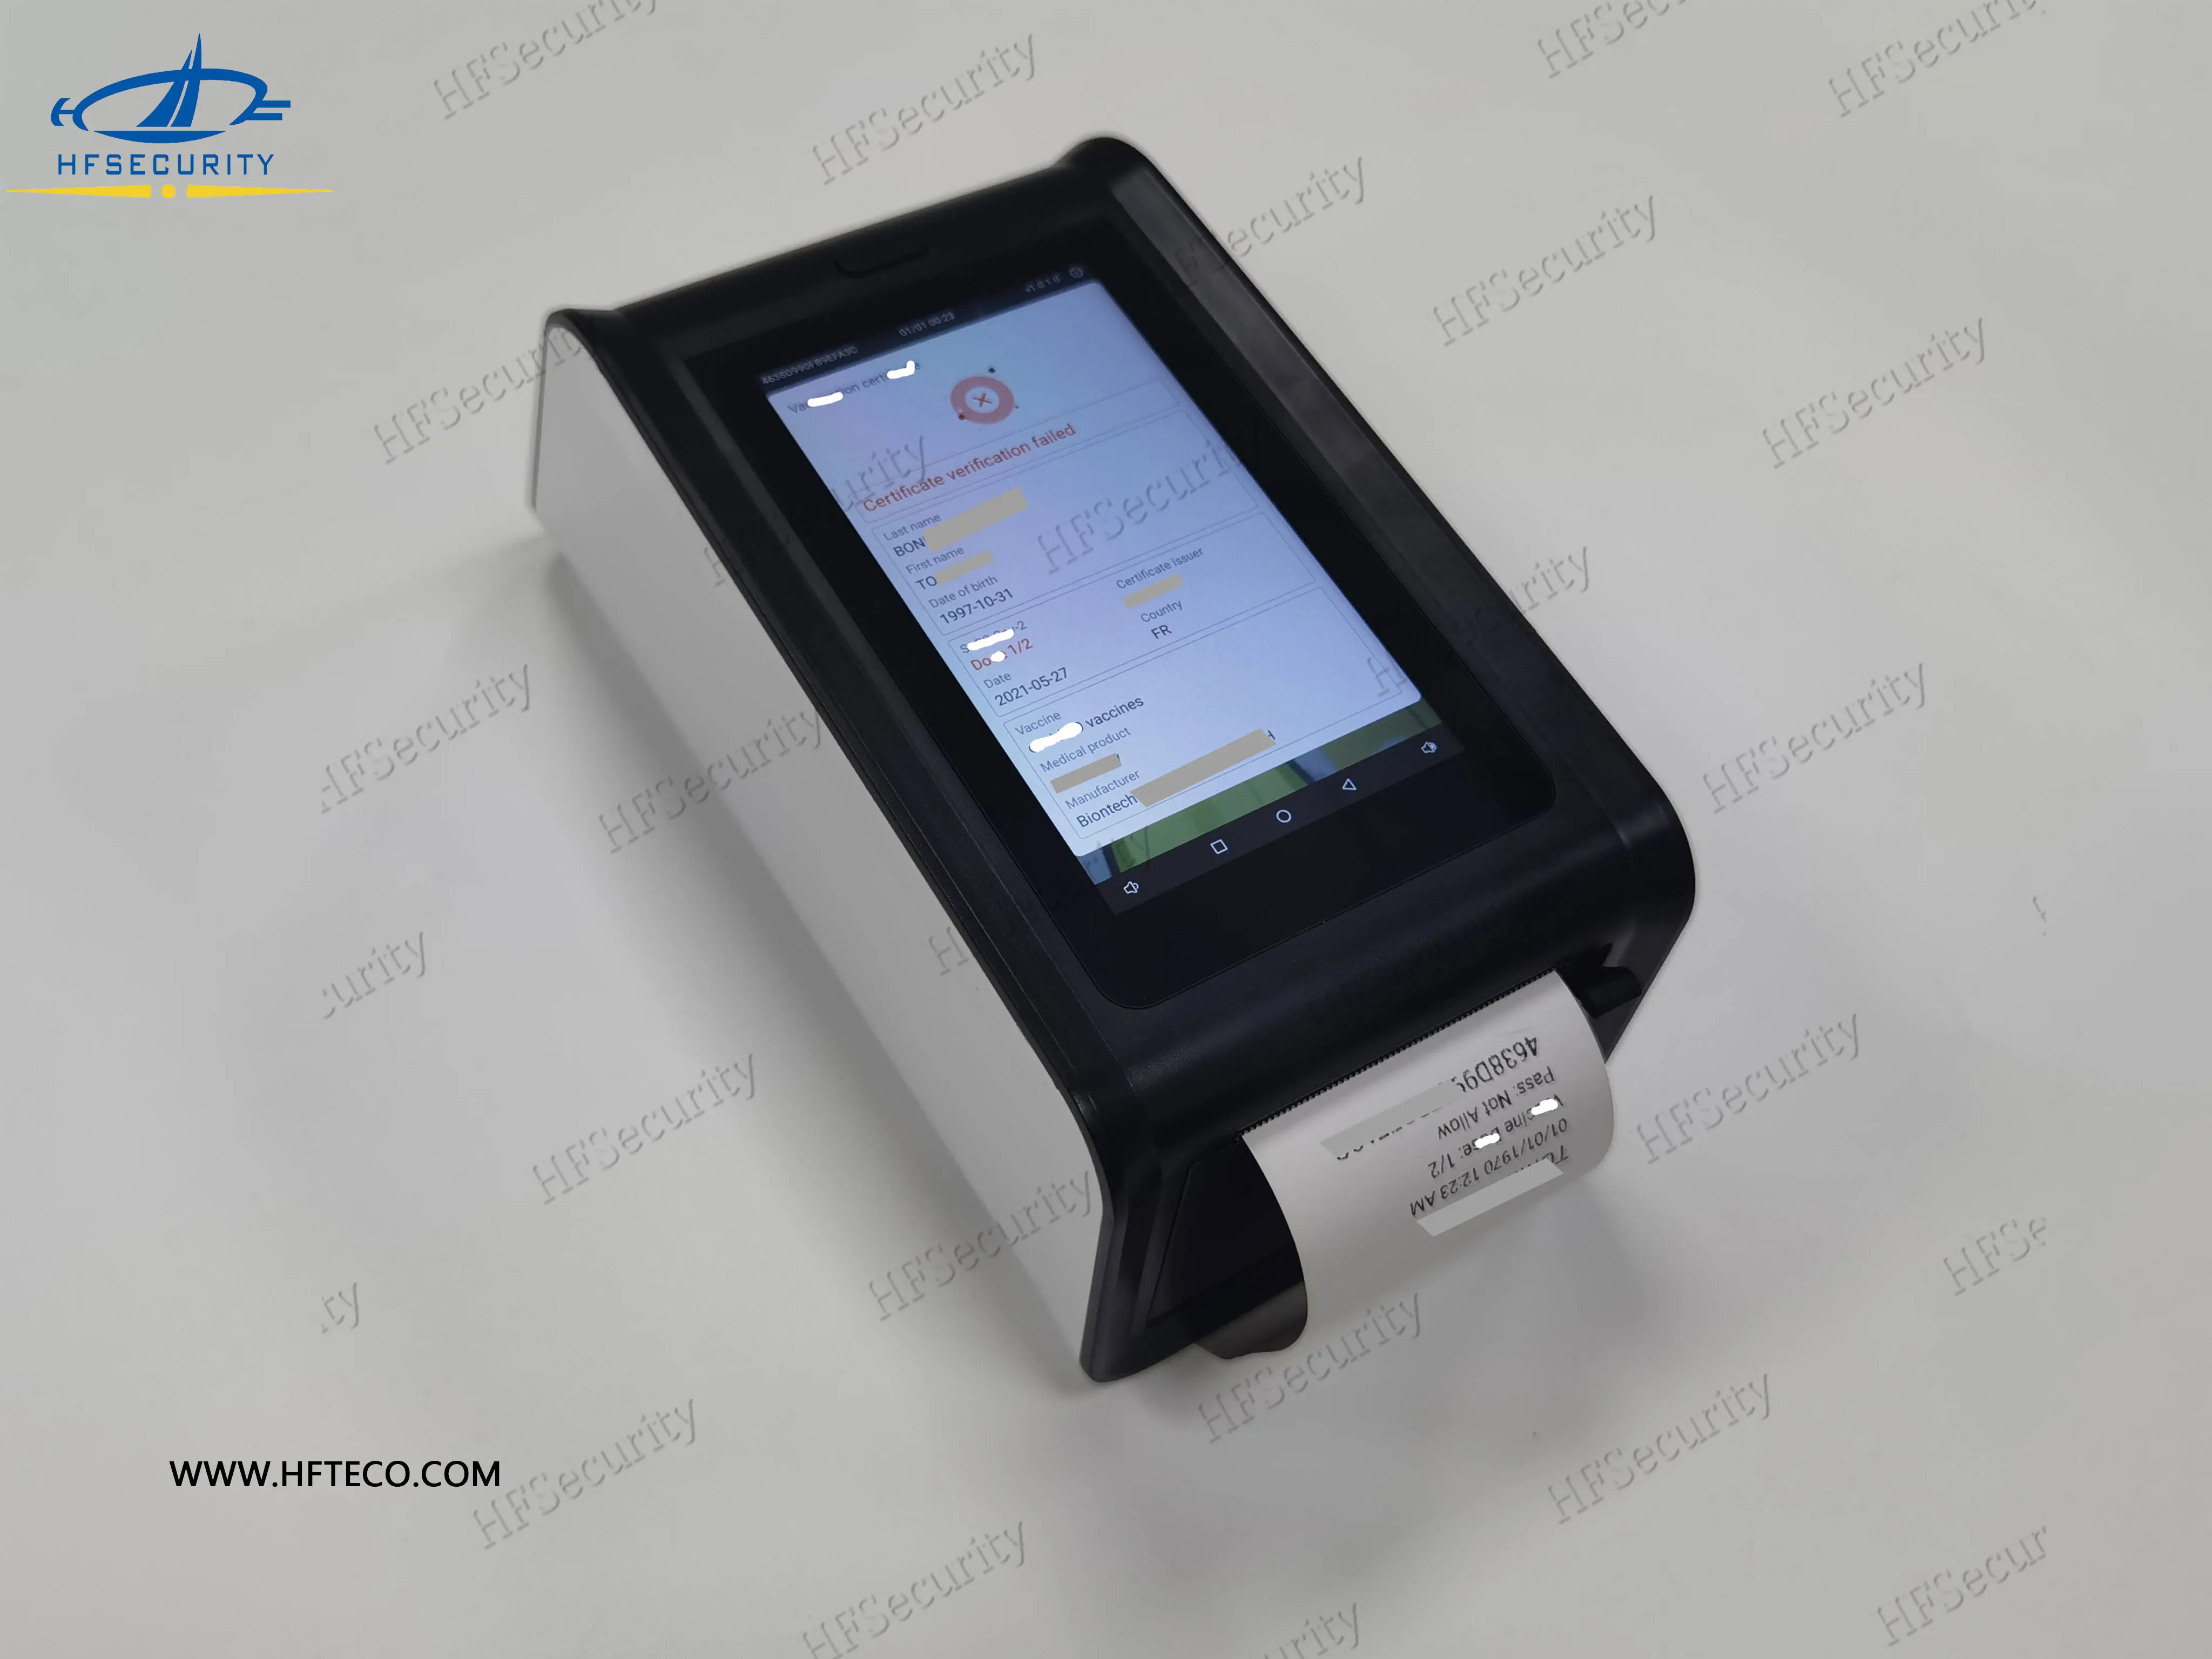 HFSecurity HF50C Android бесплатное приложение портативный сканер штрих-кодов со встроенным аккумулятором принтер штрих-кодов 58 мм Термопринтер